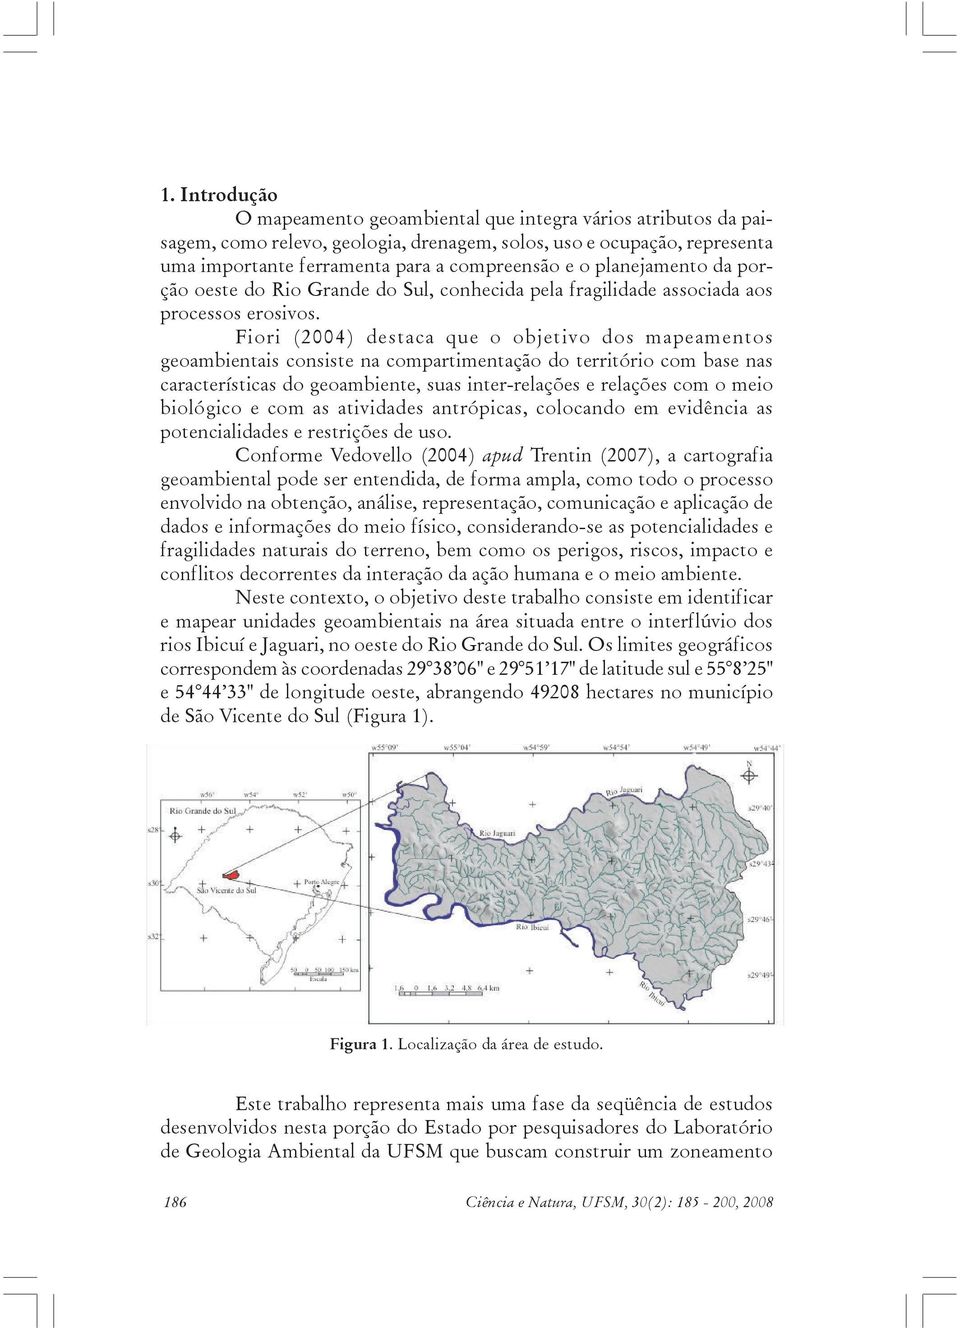 Fiori (2004) destaca que o objetivo dos mapeamentos geoambientais consiste na compartimentação do território com base nas características do geoambiente, suas inter-relações e relações com o meio